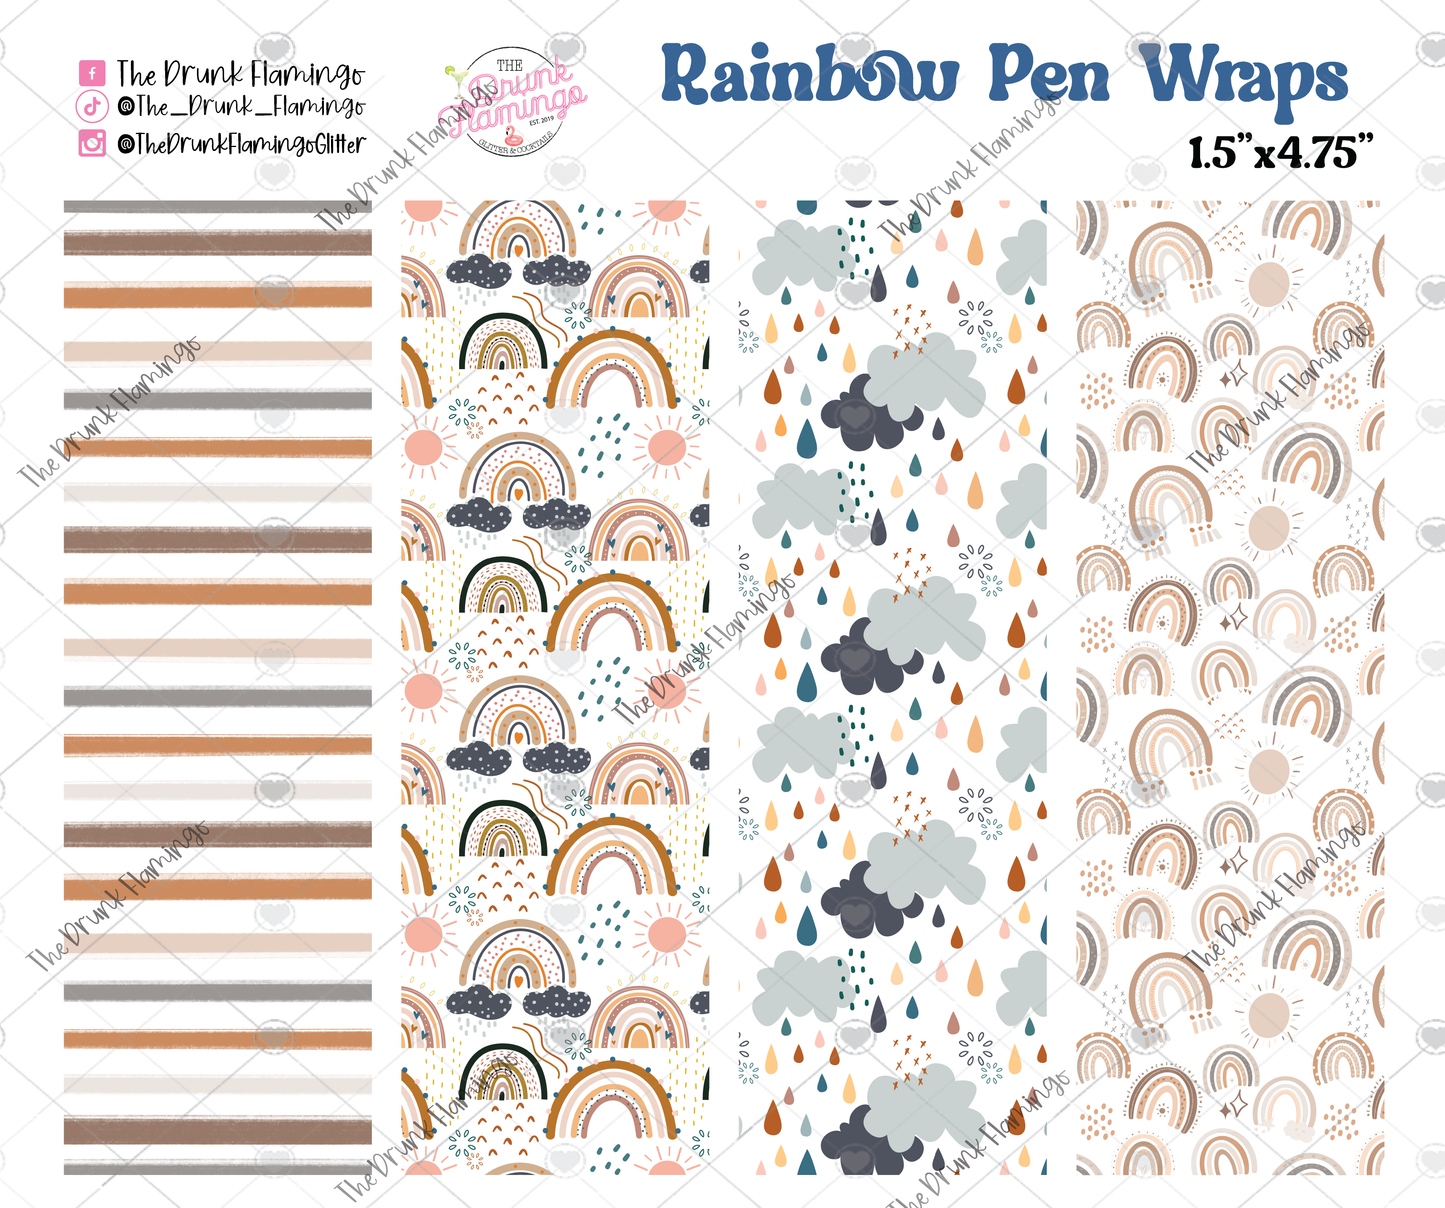 Rainbow Pen Wraps